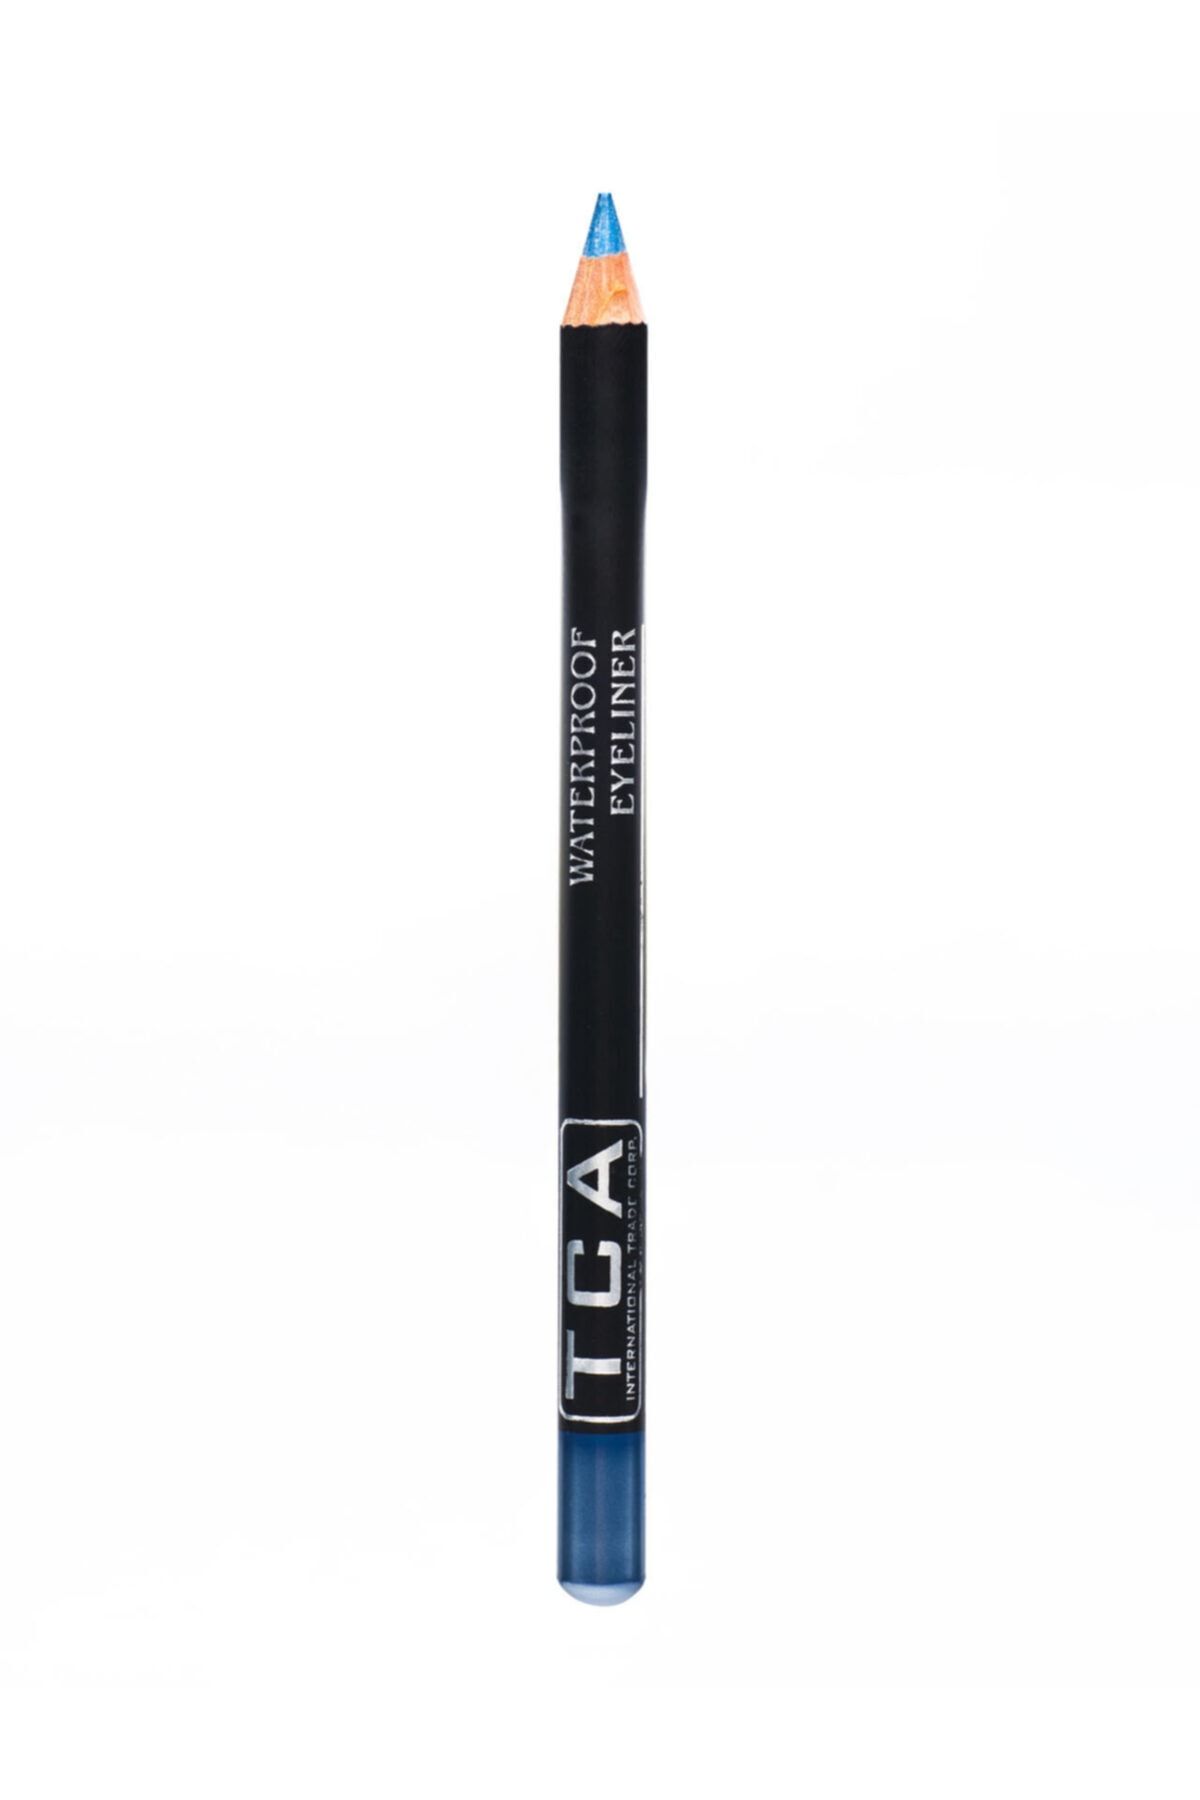 TCA Studio Make Up Suya Dayanıklı Koyu Mavi Göz Kalemi - Waterproof Eyeliner Royal Blue 8697581981037